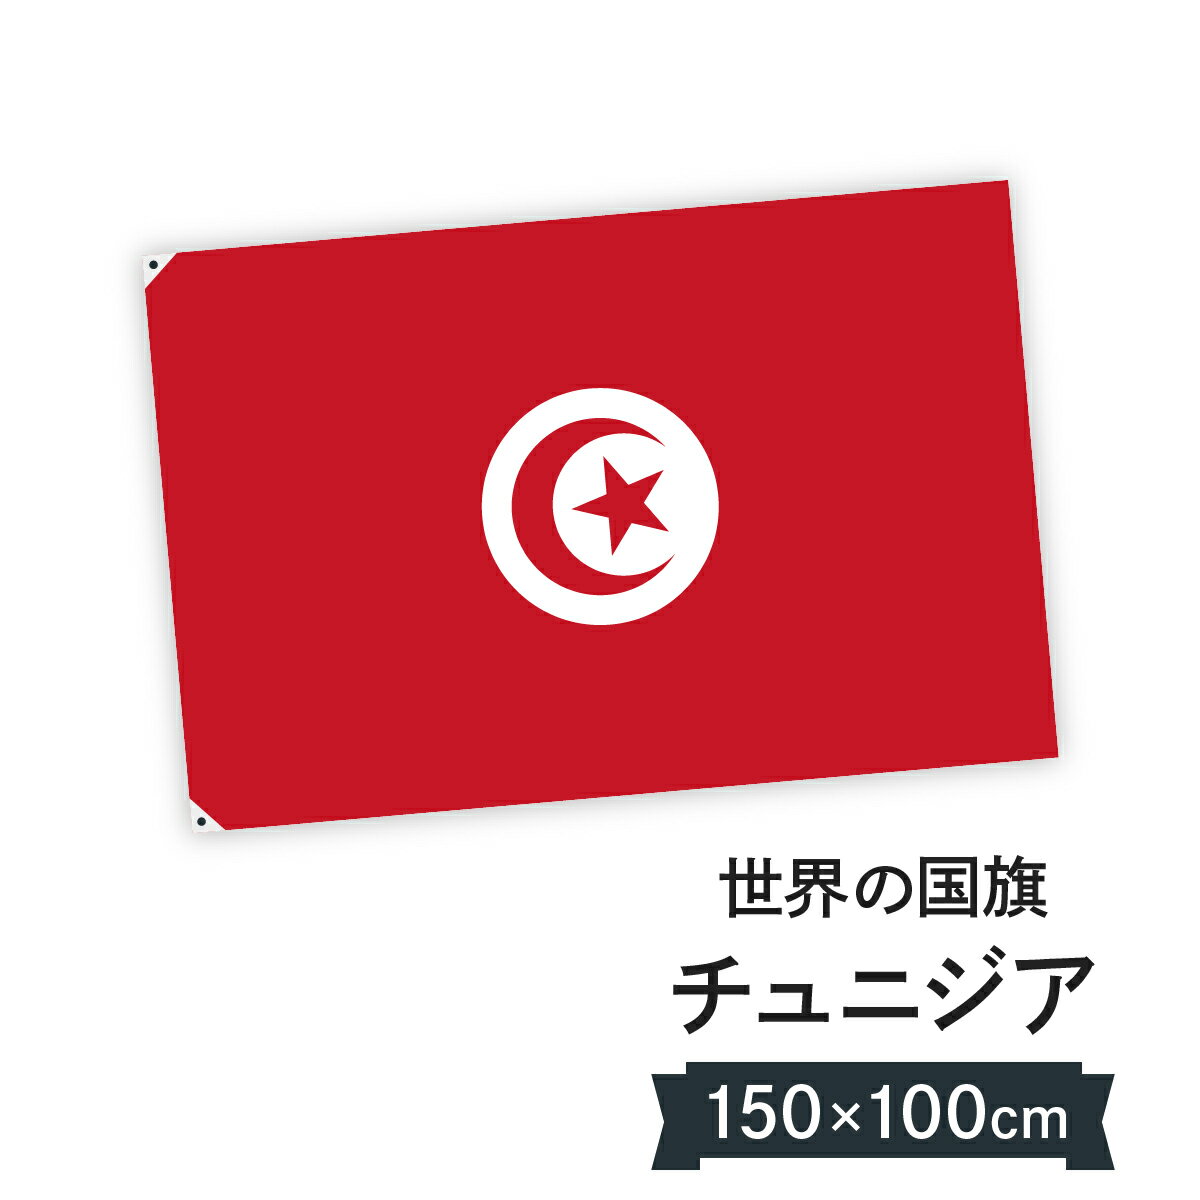 チュニジア共和国 国旗 W150cm H100cm